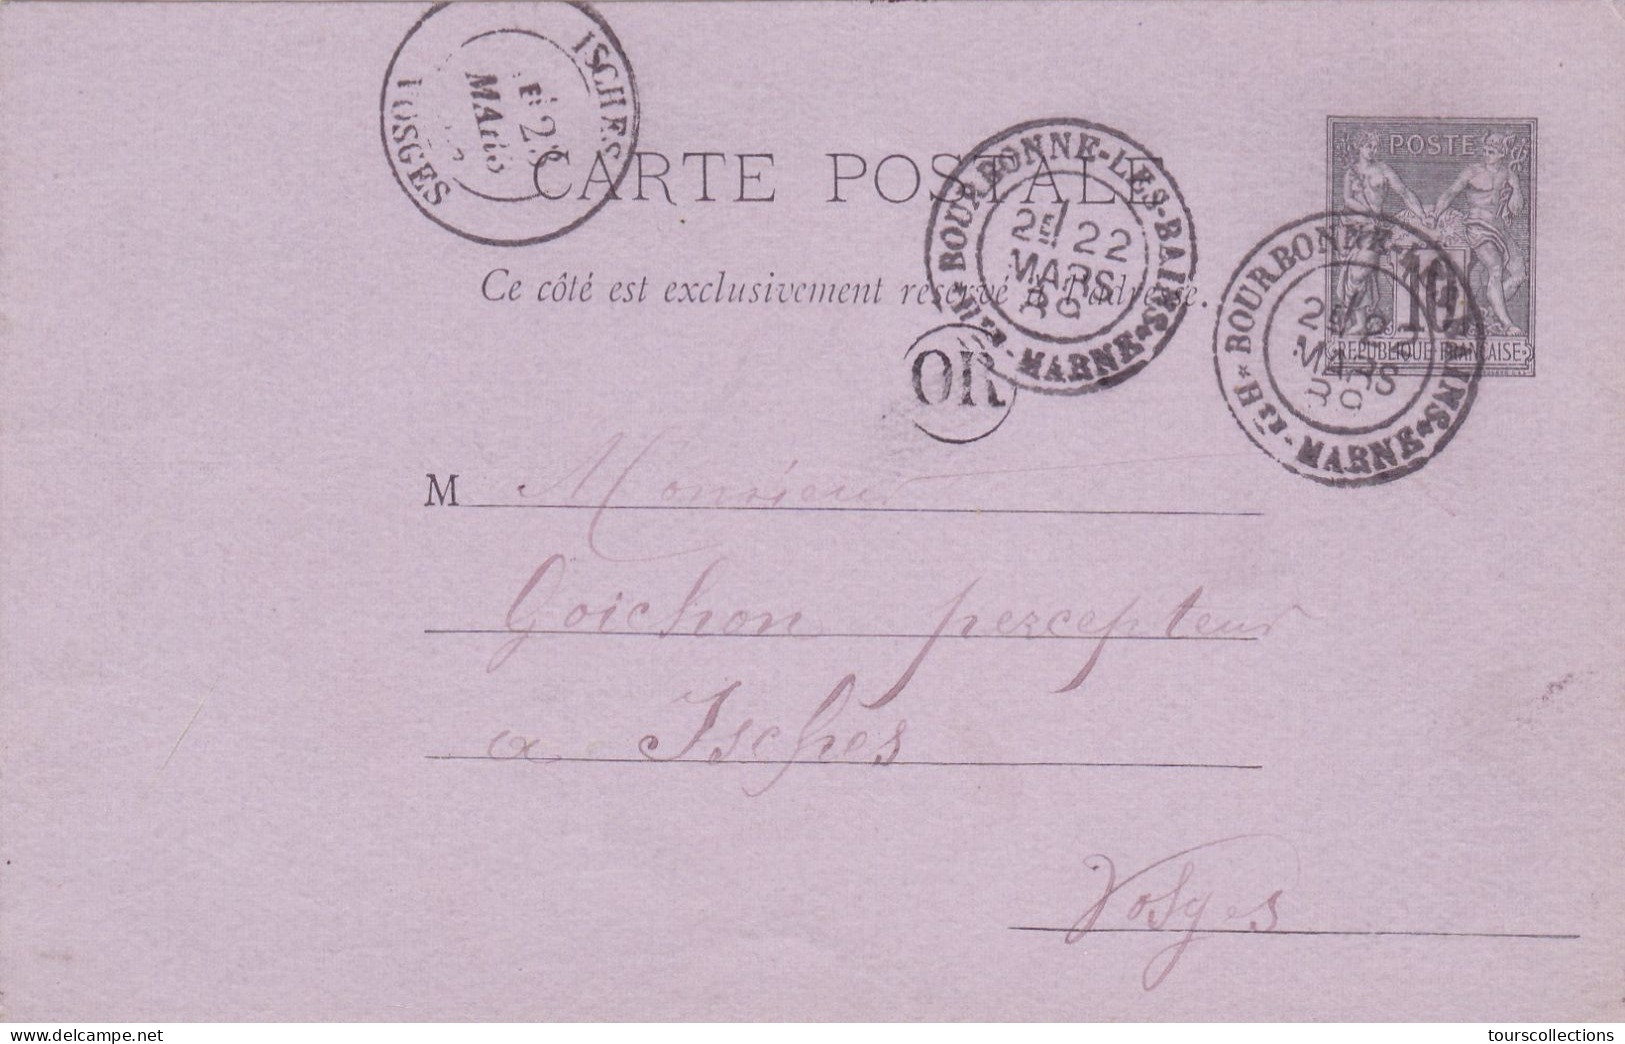 ENTIER POSTAL SAGE CARTE POSTALE De 1889 Cachet OR Bourbonnes 52 à Isches 88 Vosges - Flosio à Goichon Percepteur Impôts - Cartes Précurseurs